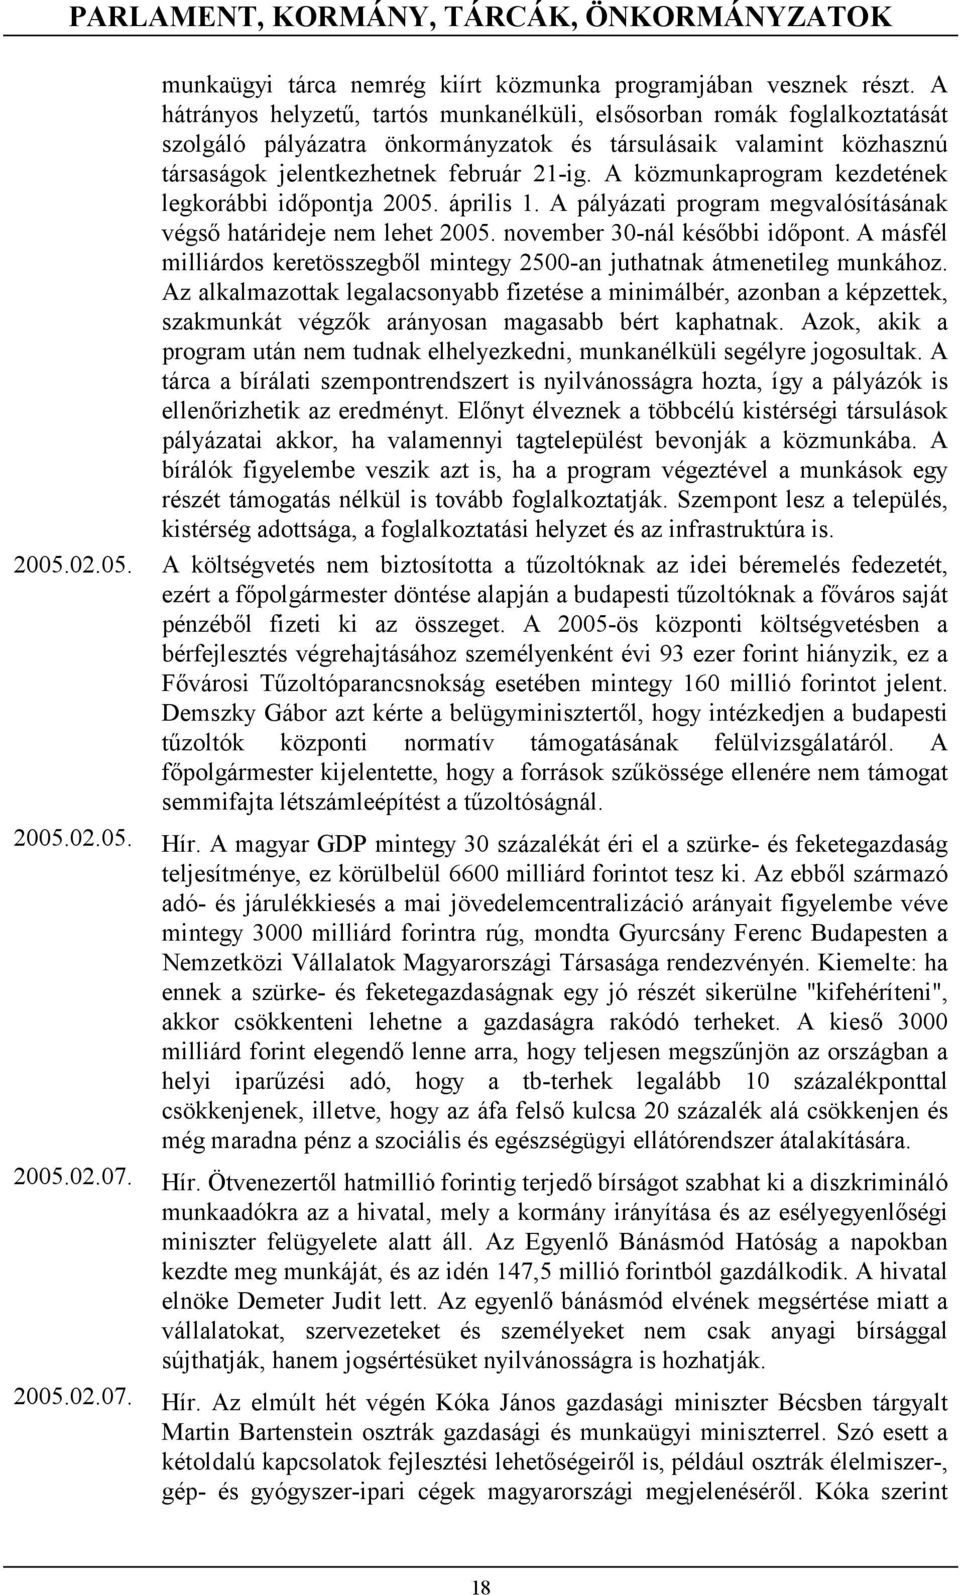 A közmunkaprogram kezdetének legkorábbi időpontja 2005. április 1. A pályázati program megvalósításának végső határideje nem lehet 2005. november 30-nál későbbi időpont.